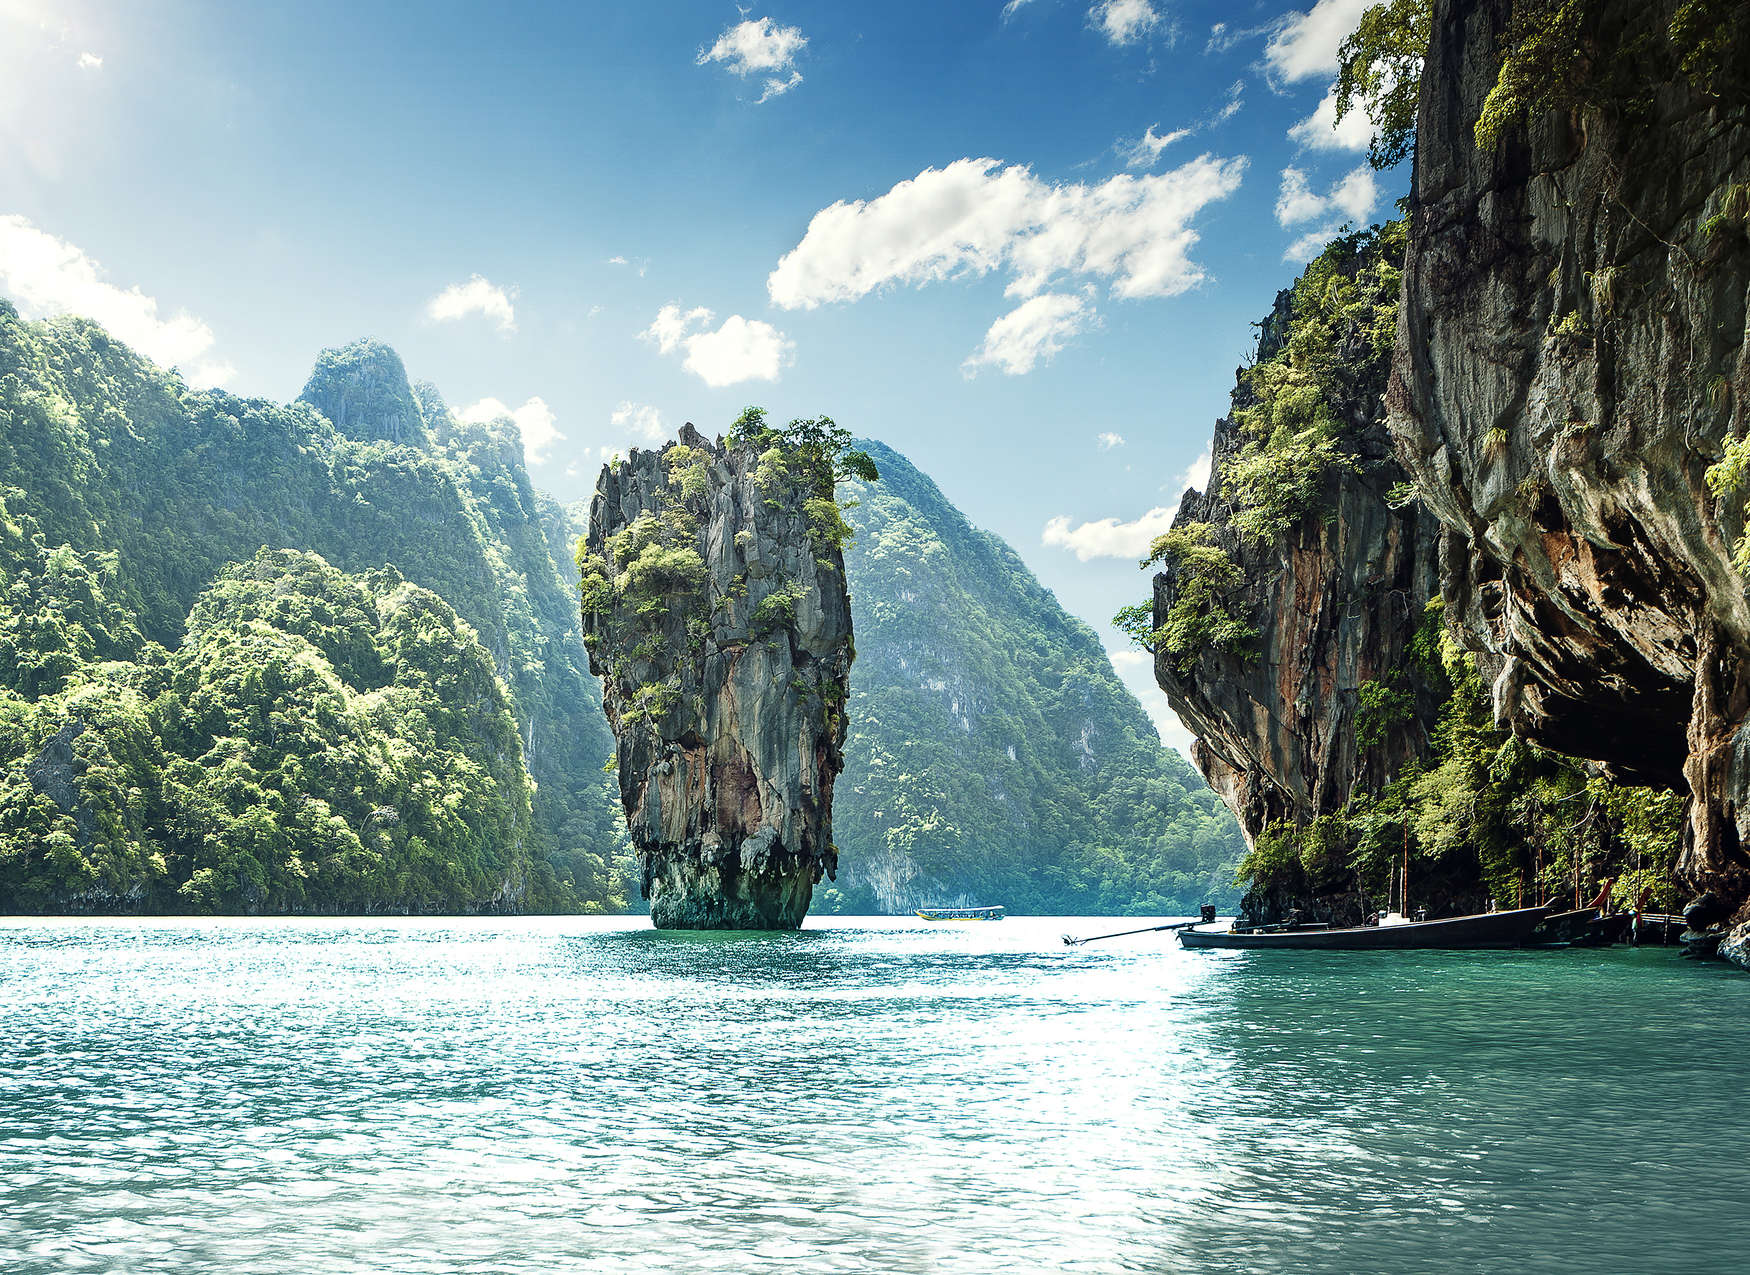             Fondo de pantalla con una vista paradisíaca de un paisaje montañoso en Tailandia - Azul, Verde, Blanco
        